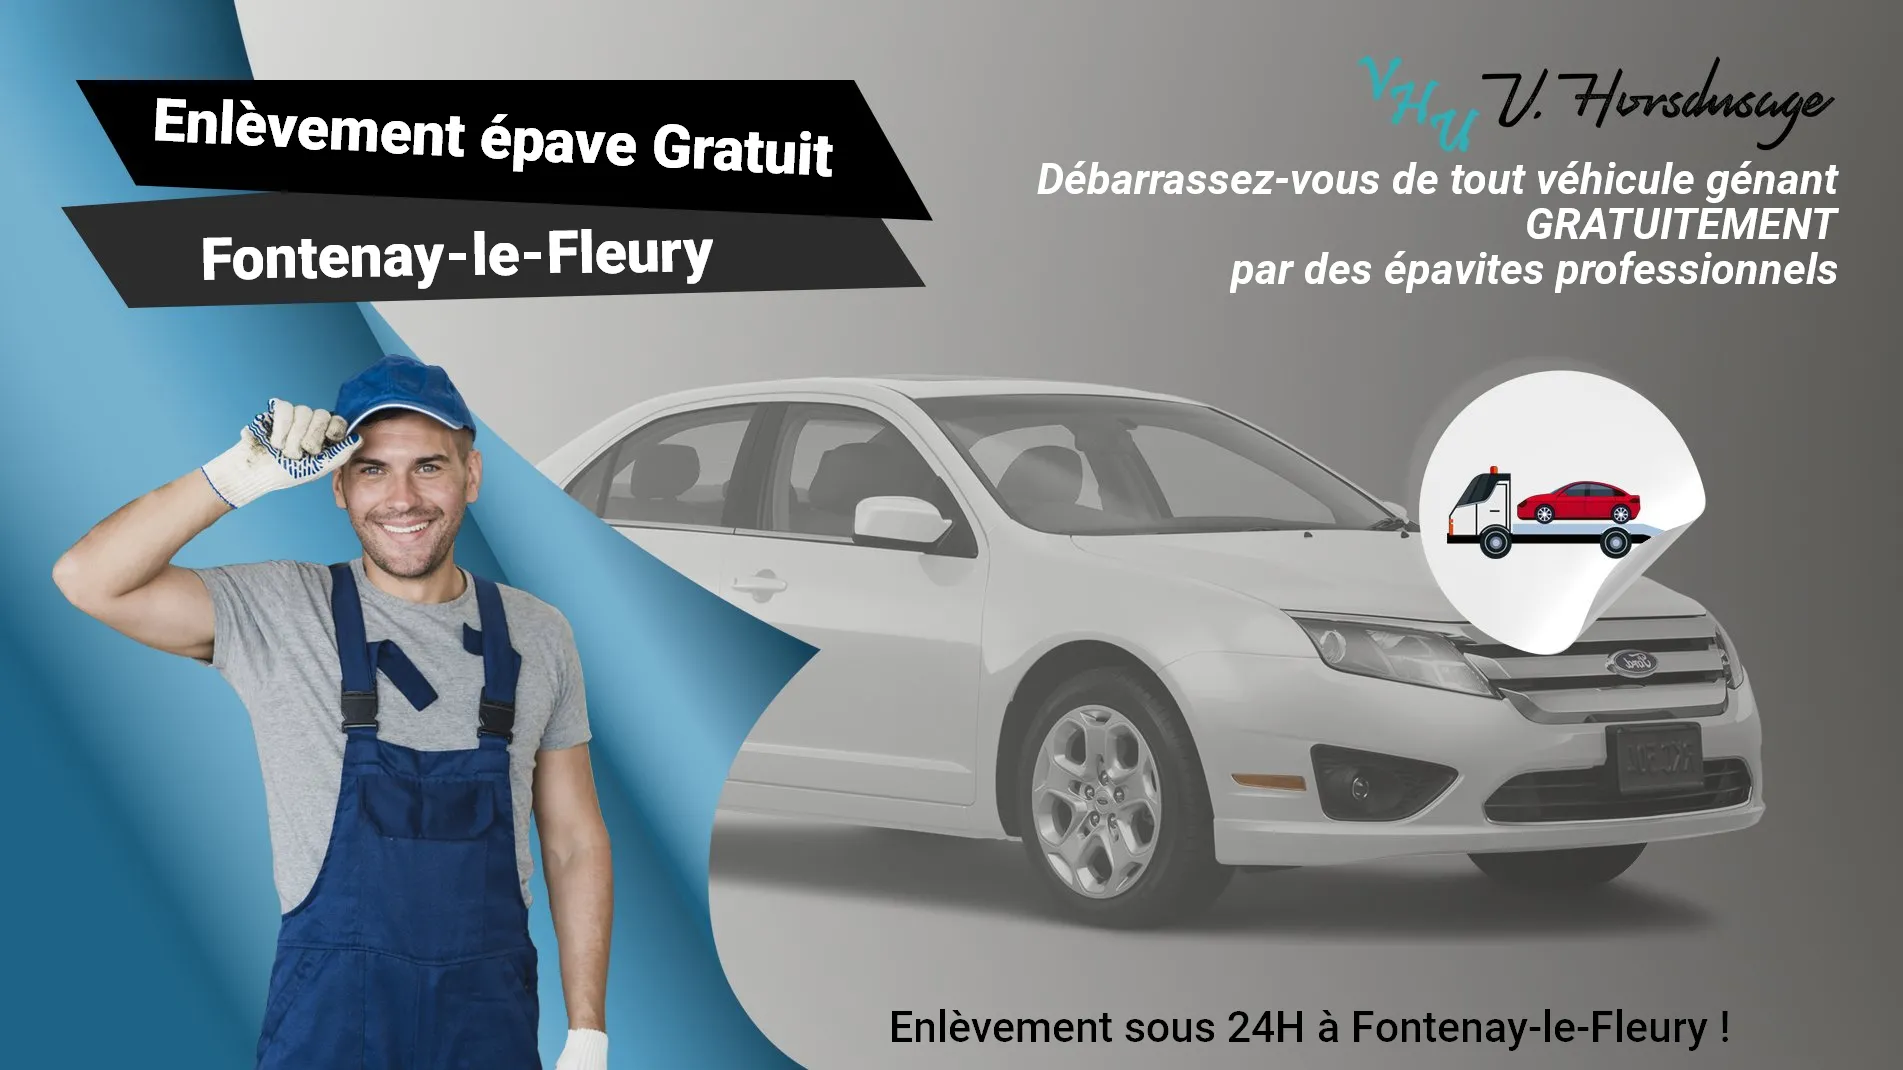 Pour un enlèvement gratuit à Fontenay-le-Fleury, contactez nos épavistes agréé VHU